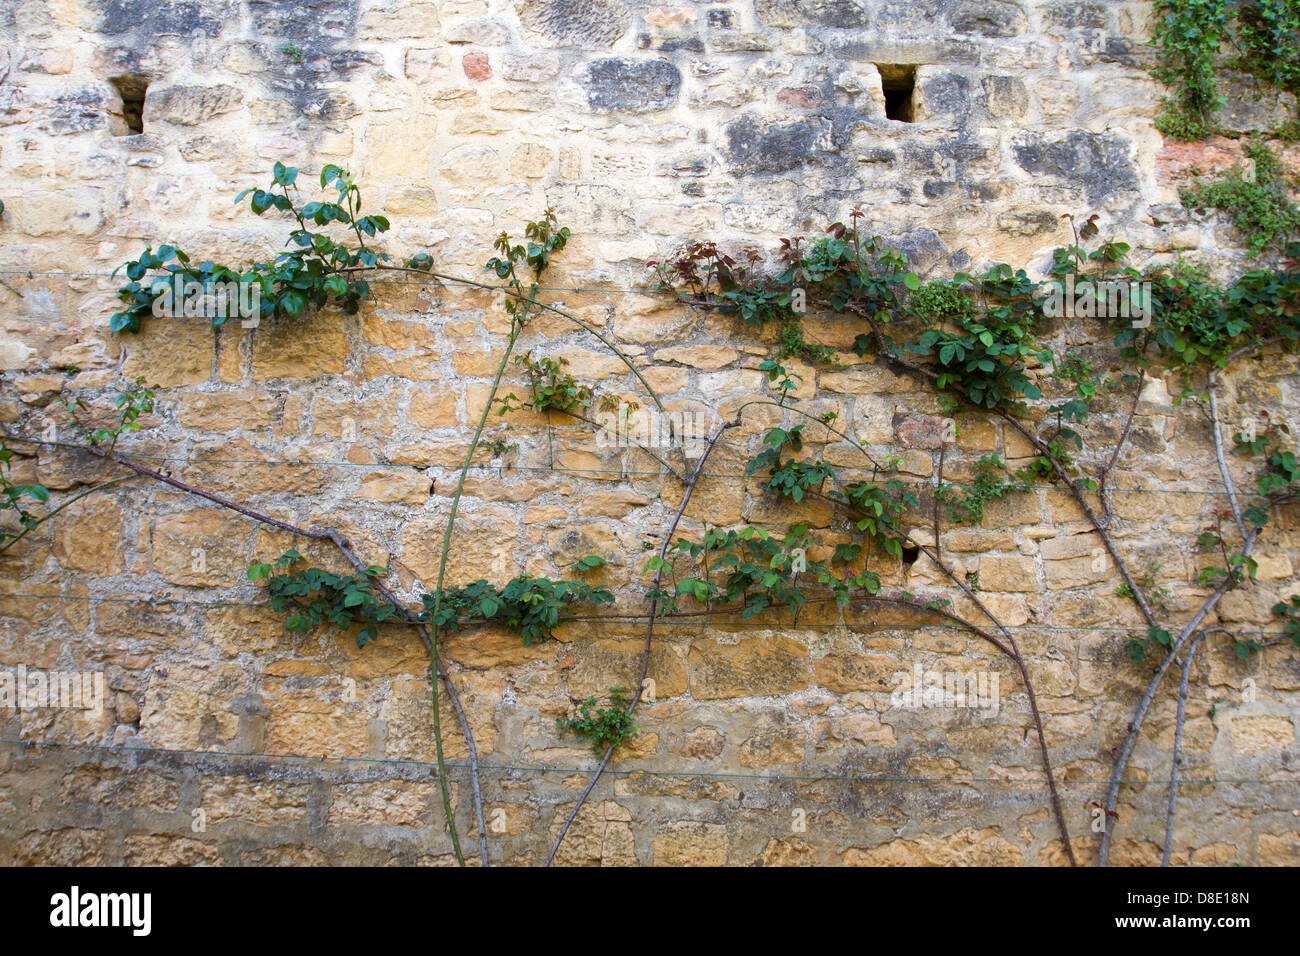 Vignes le long mur de pierre médiévale à Sarlat, Dordogne France Banque D'Images